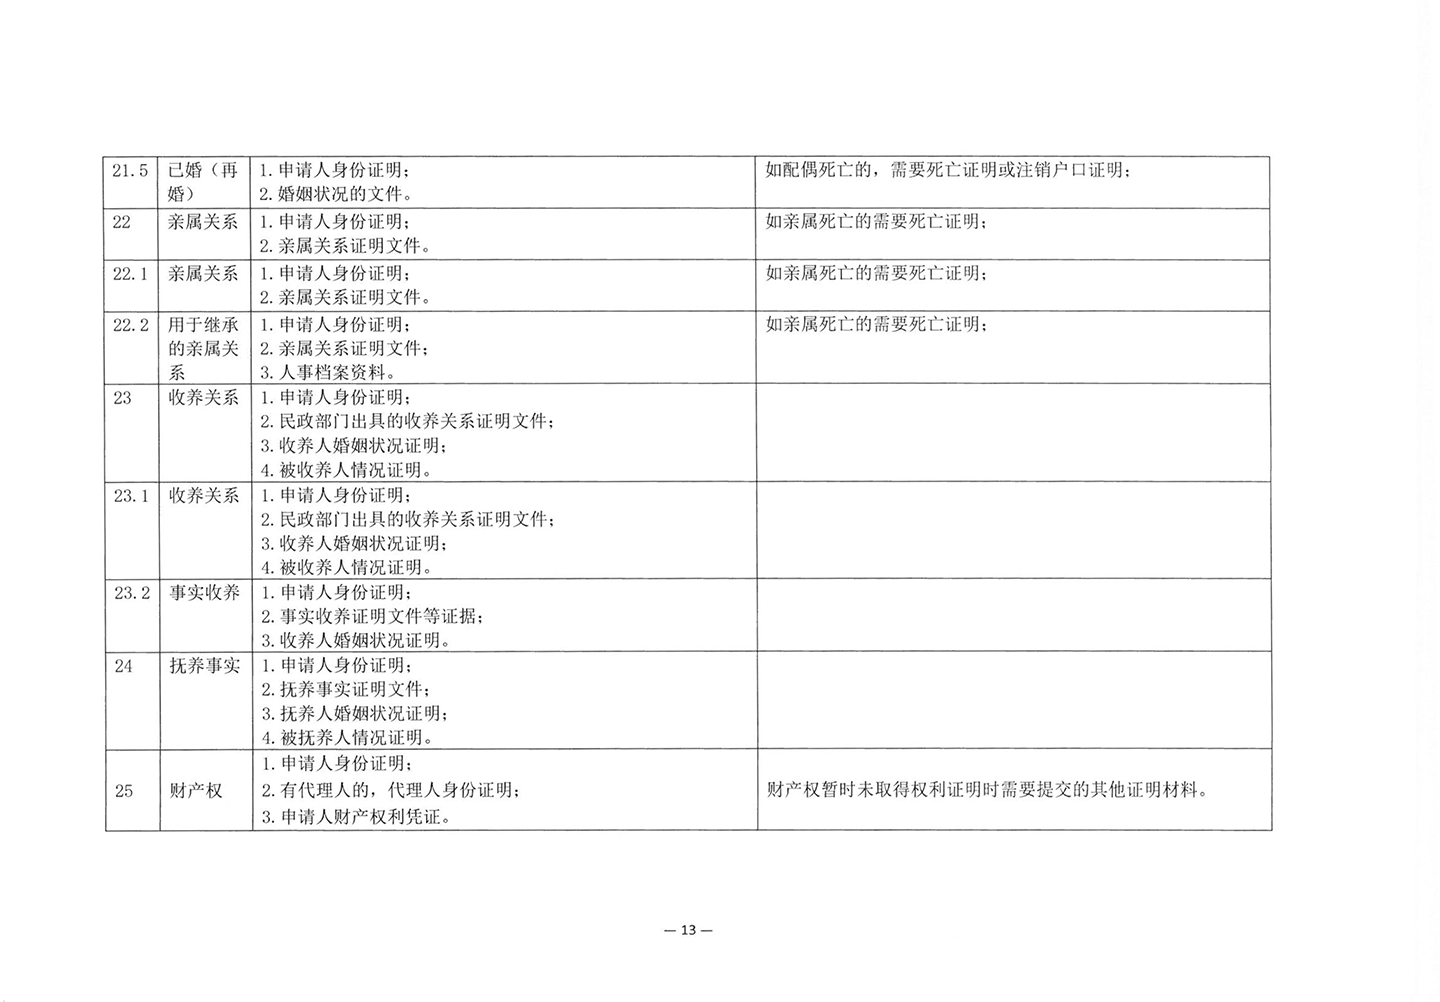 010417243466_03北京市公证协会关于印发《公证机构受理公证事项事务申请证明材料清单》的通知_15